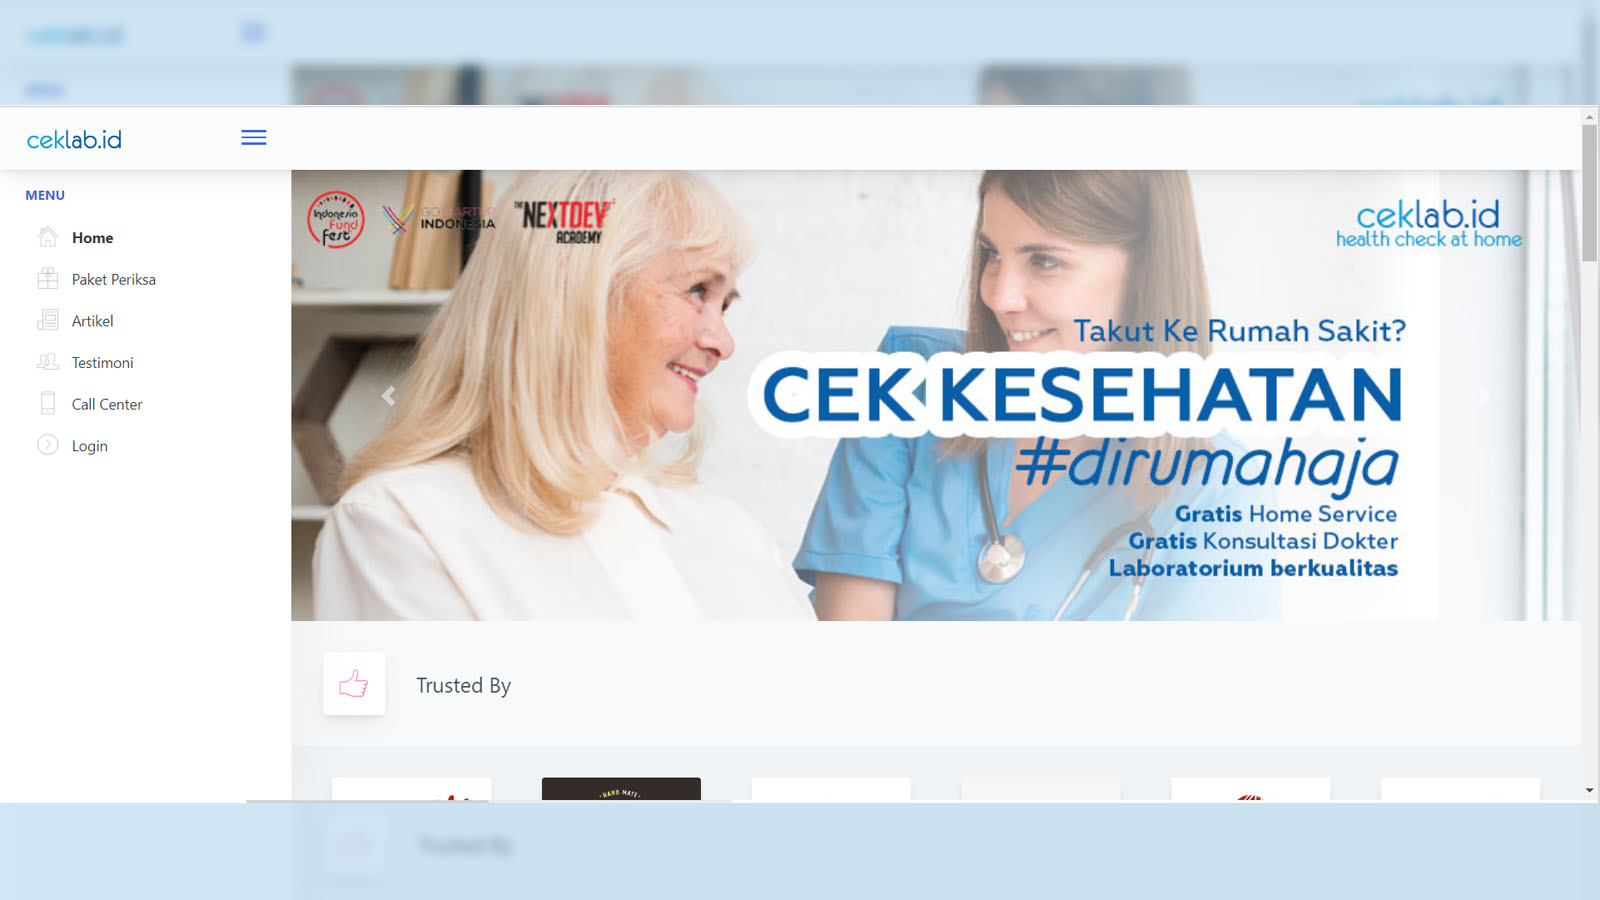 Website of Ceklab.id. (Illustration: Feri Fenoria)